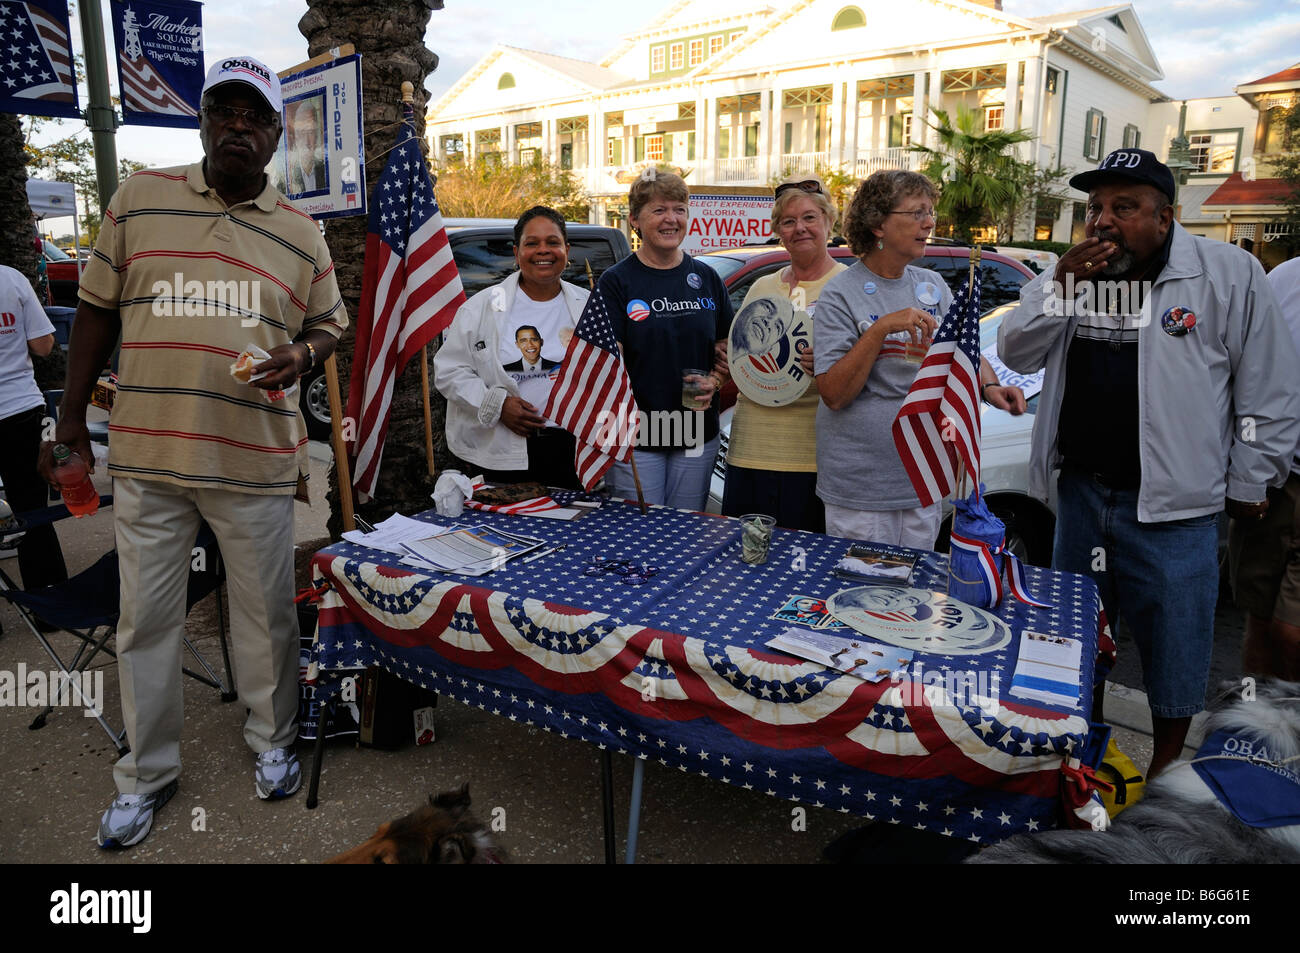 Obama-Kampagne Unterstützer Spendenaktionen in der Straße. Sumpter, die Landung der Dorf-Florida-Amerika-USA Stockfoto